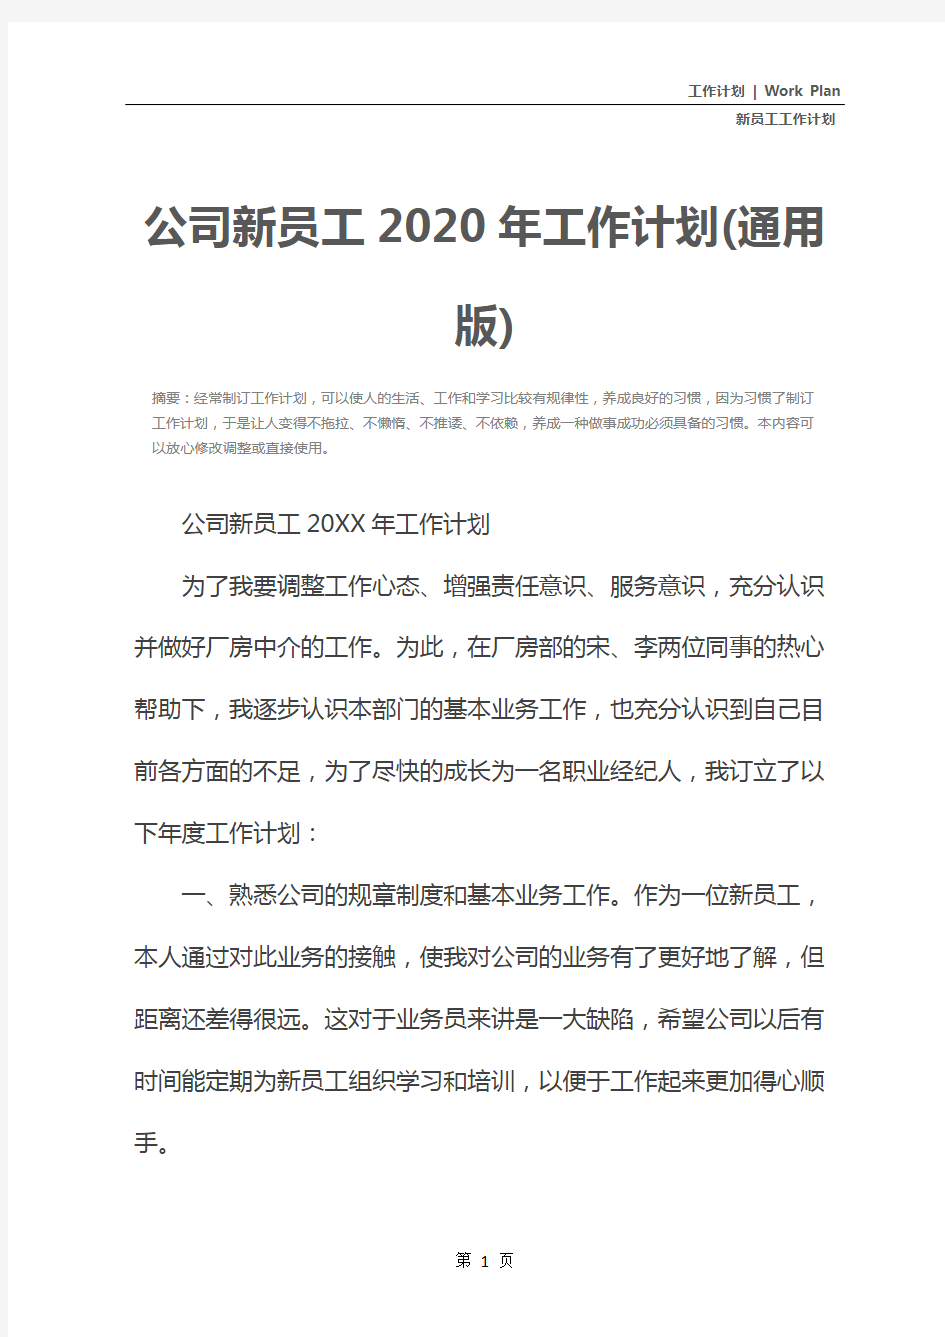 公司新员工2020年工作计划(通用版)